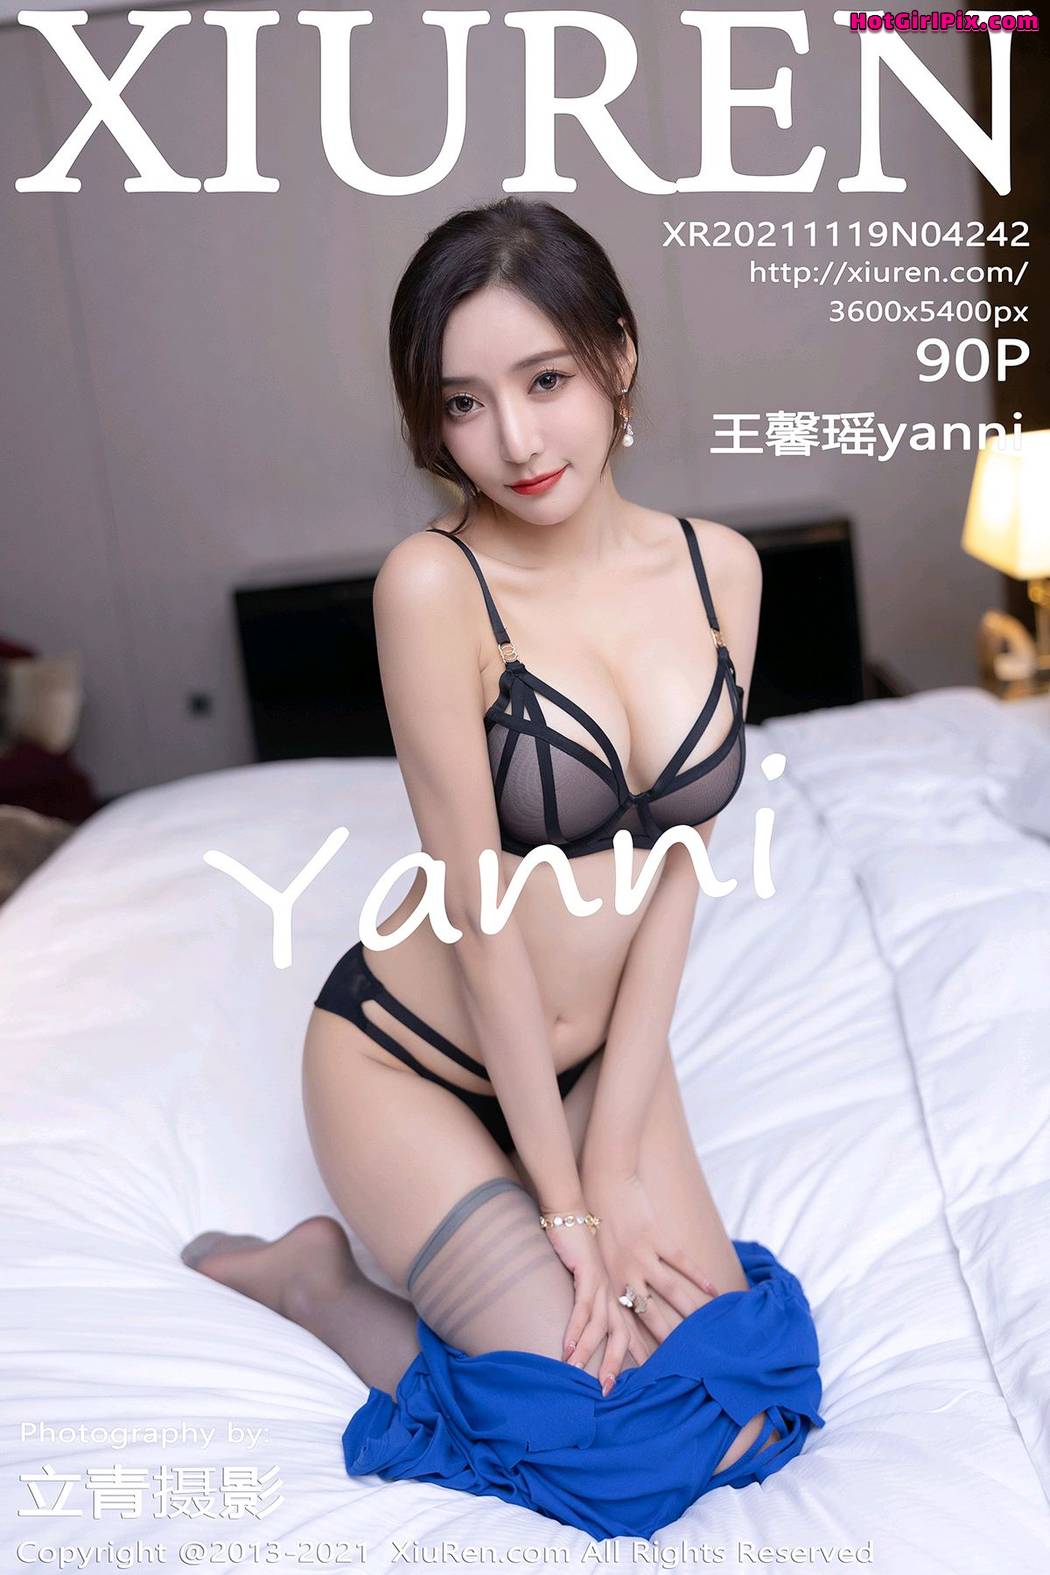 [XIUREN] No.4242 Wang Xin Yao 王馨瑶yanni Cover Photo